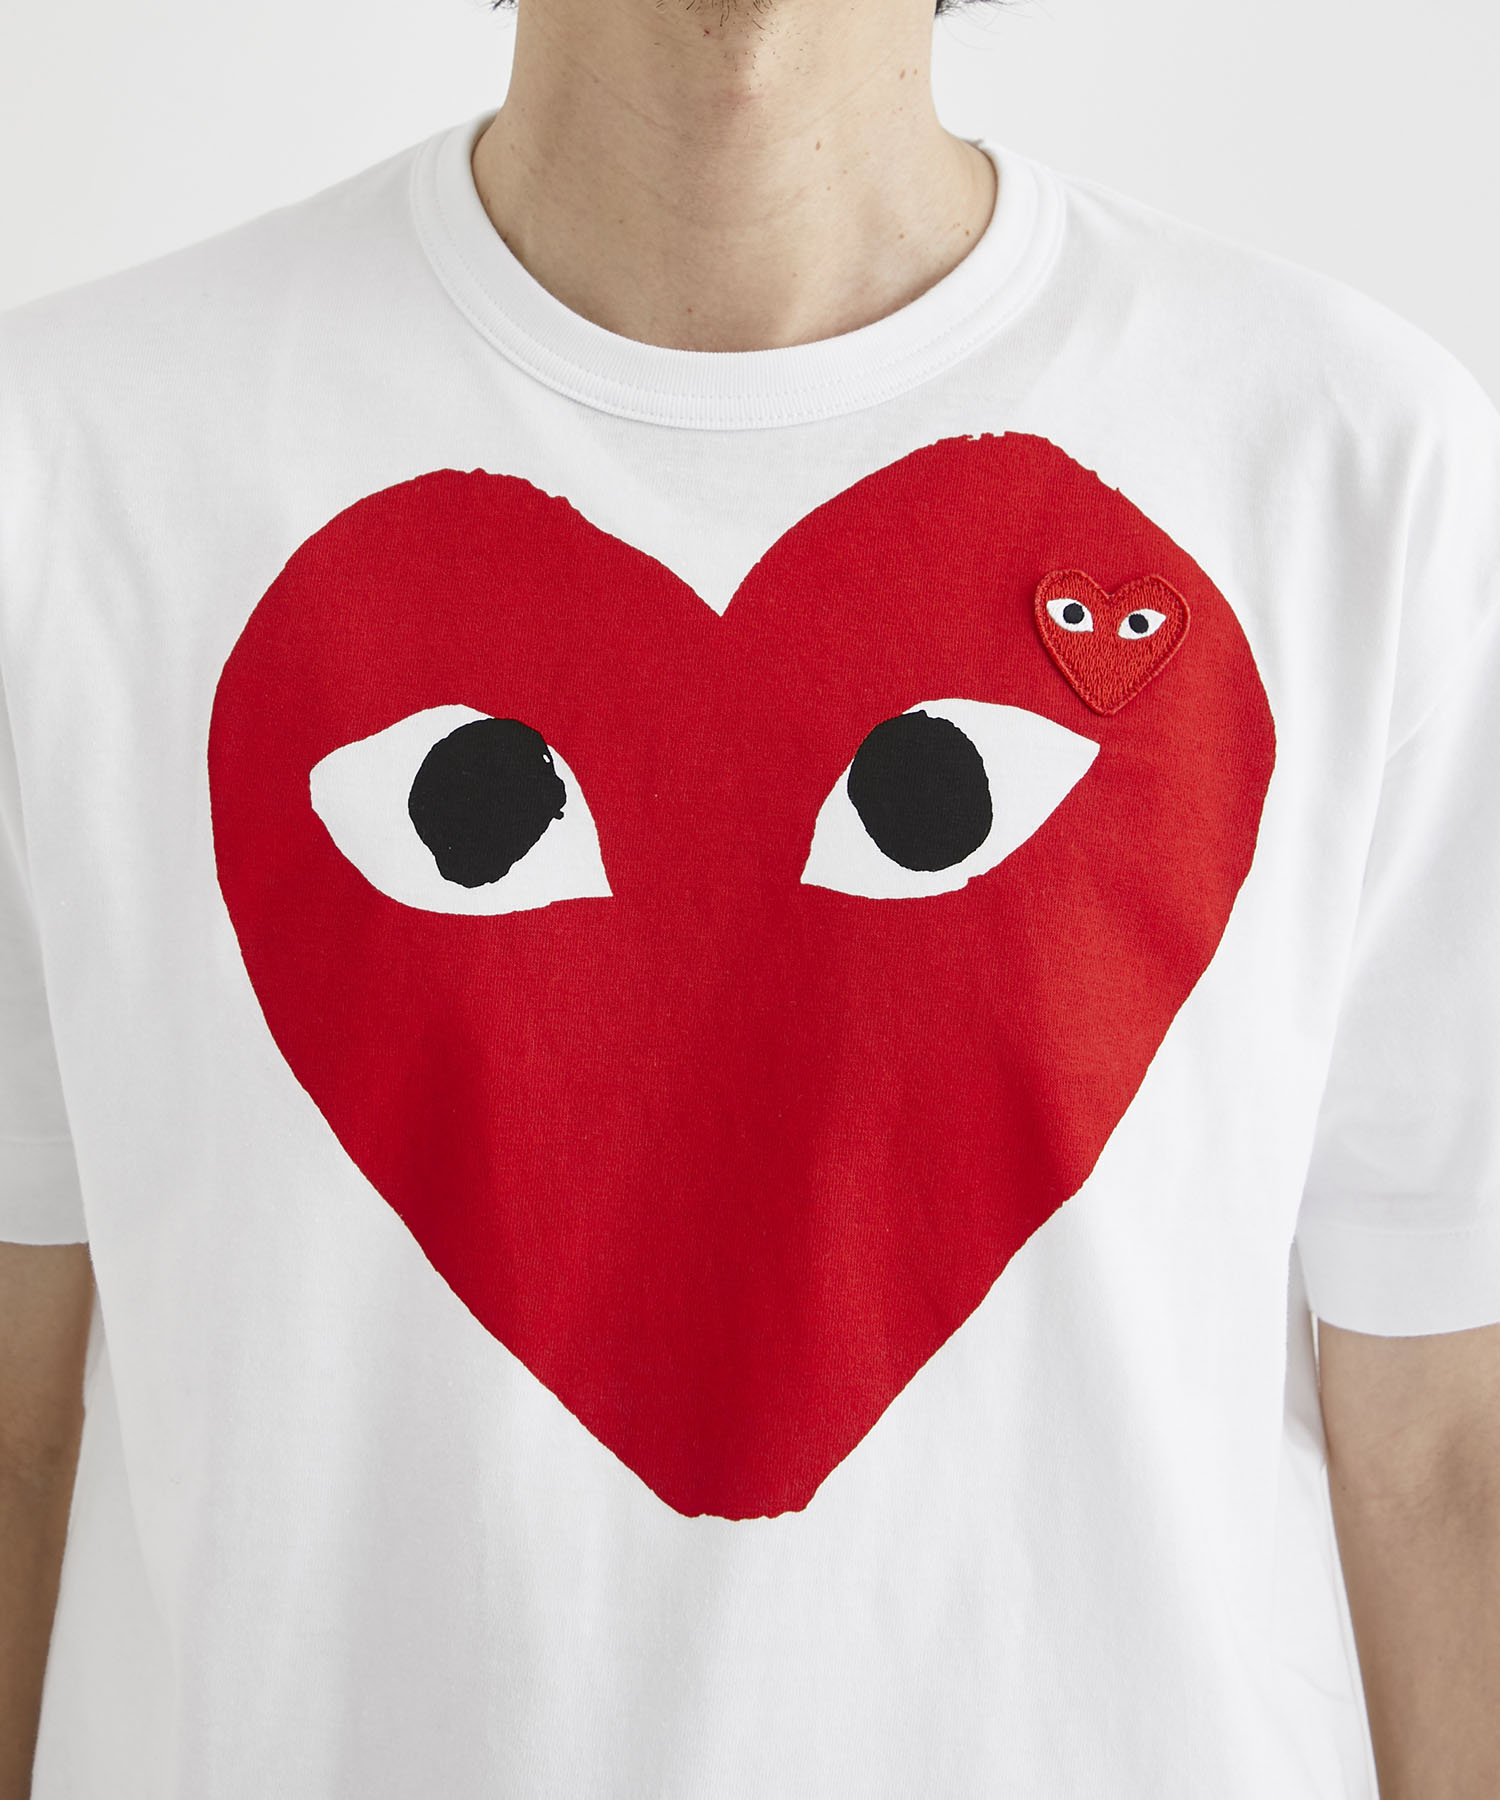 T026 Red Heart T-shirt